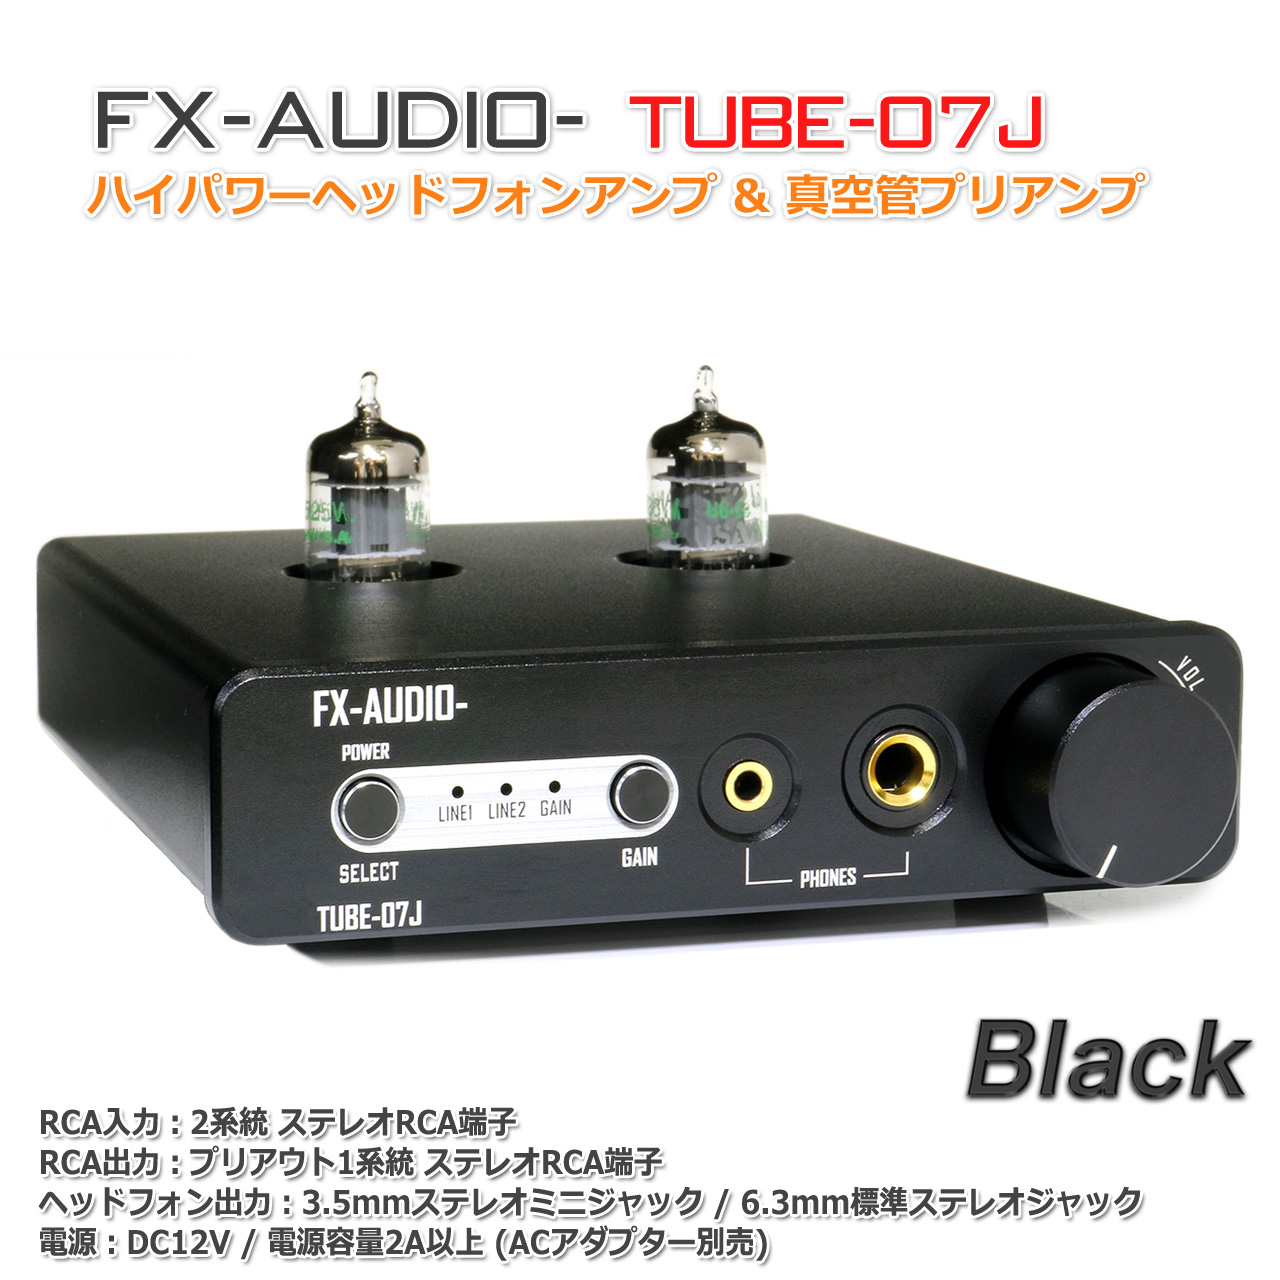 【楽天市場】送料無料 FX-AUDIO- TUBE-07J[ブラック]ハイパワー